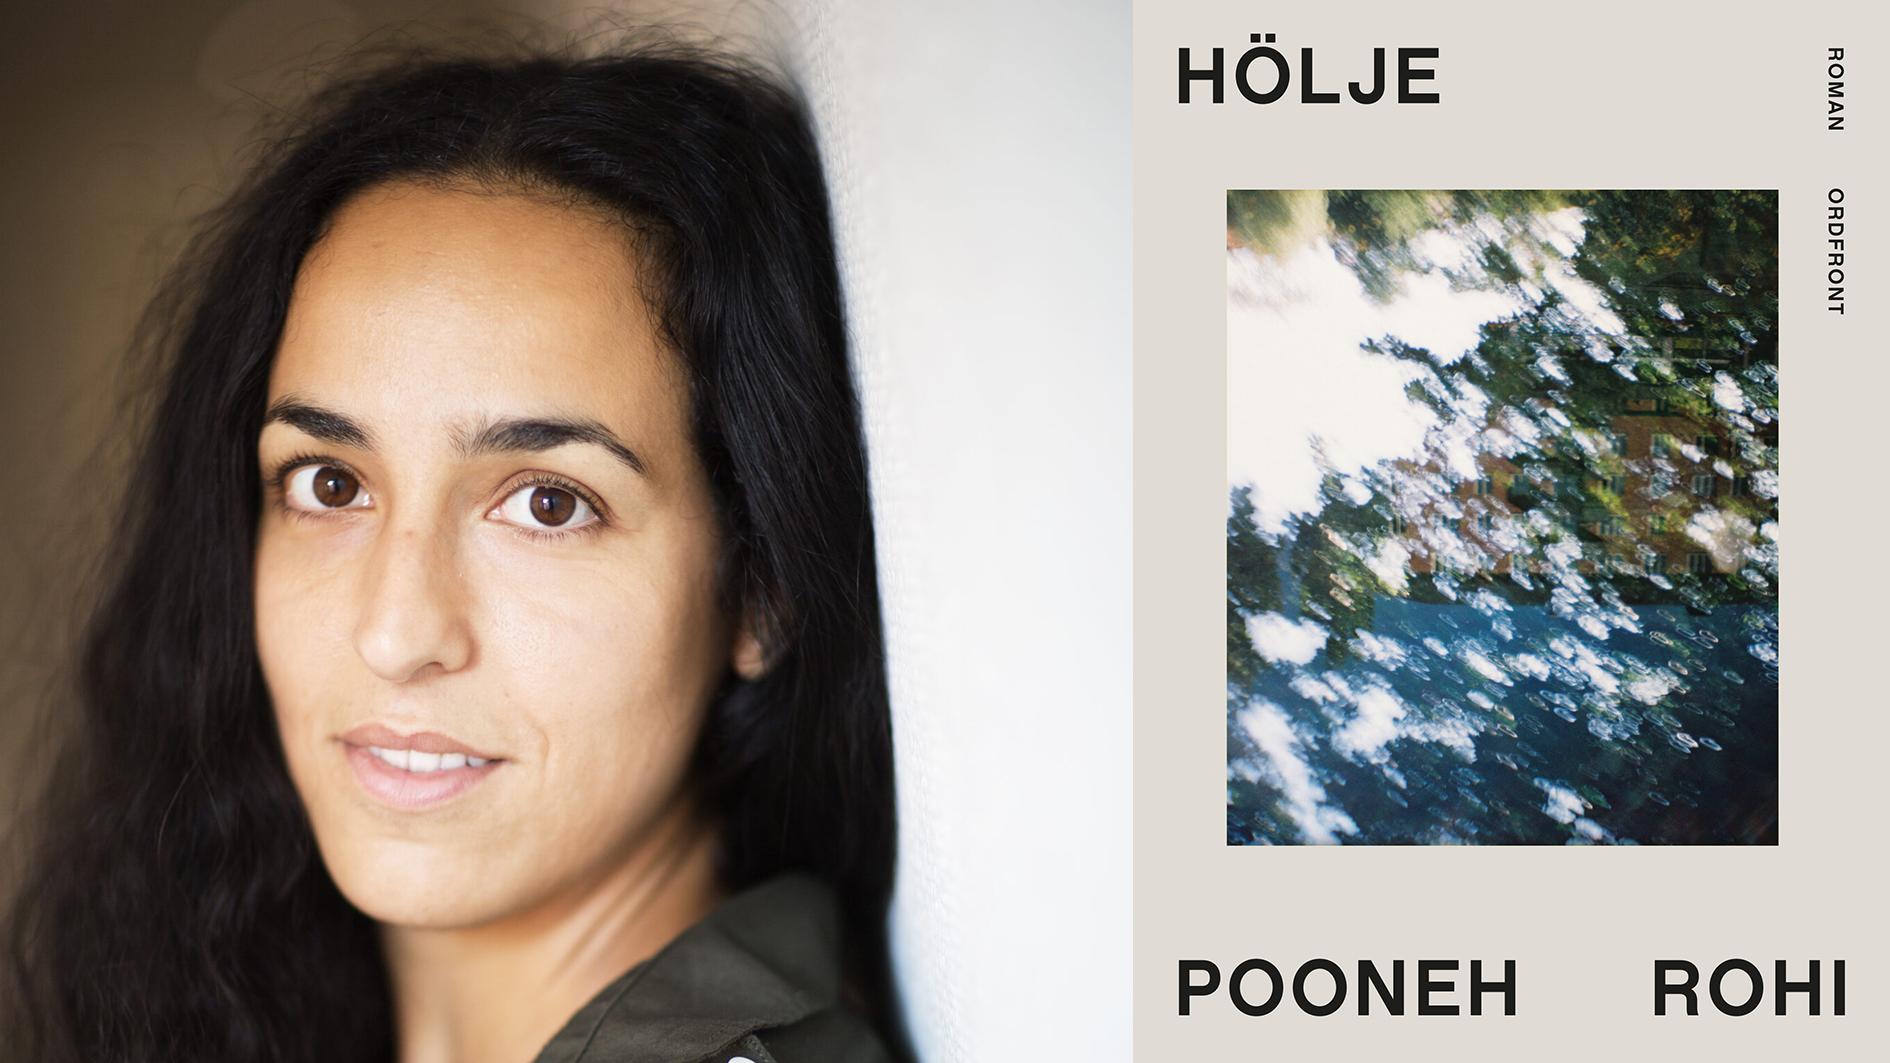 Pooneh Rohi  är född 1982  i Iran och  uppvuxen  i Stockholm.